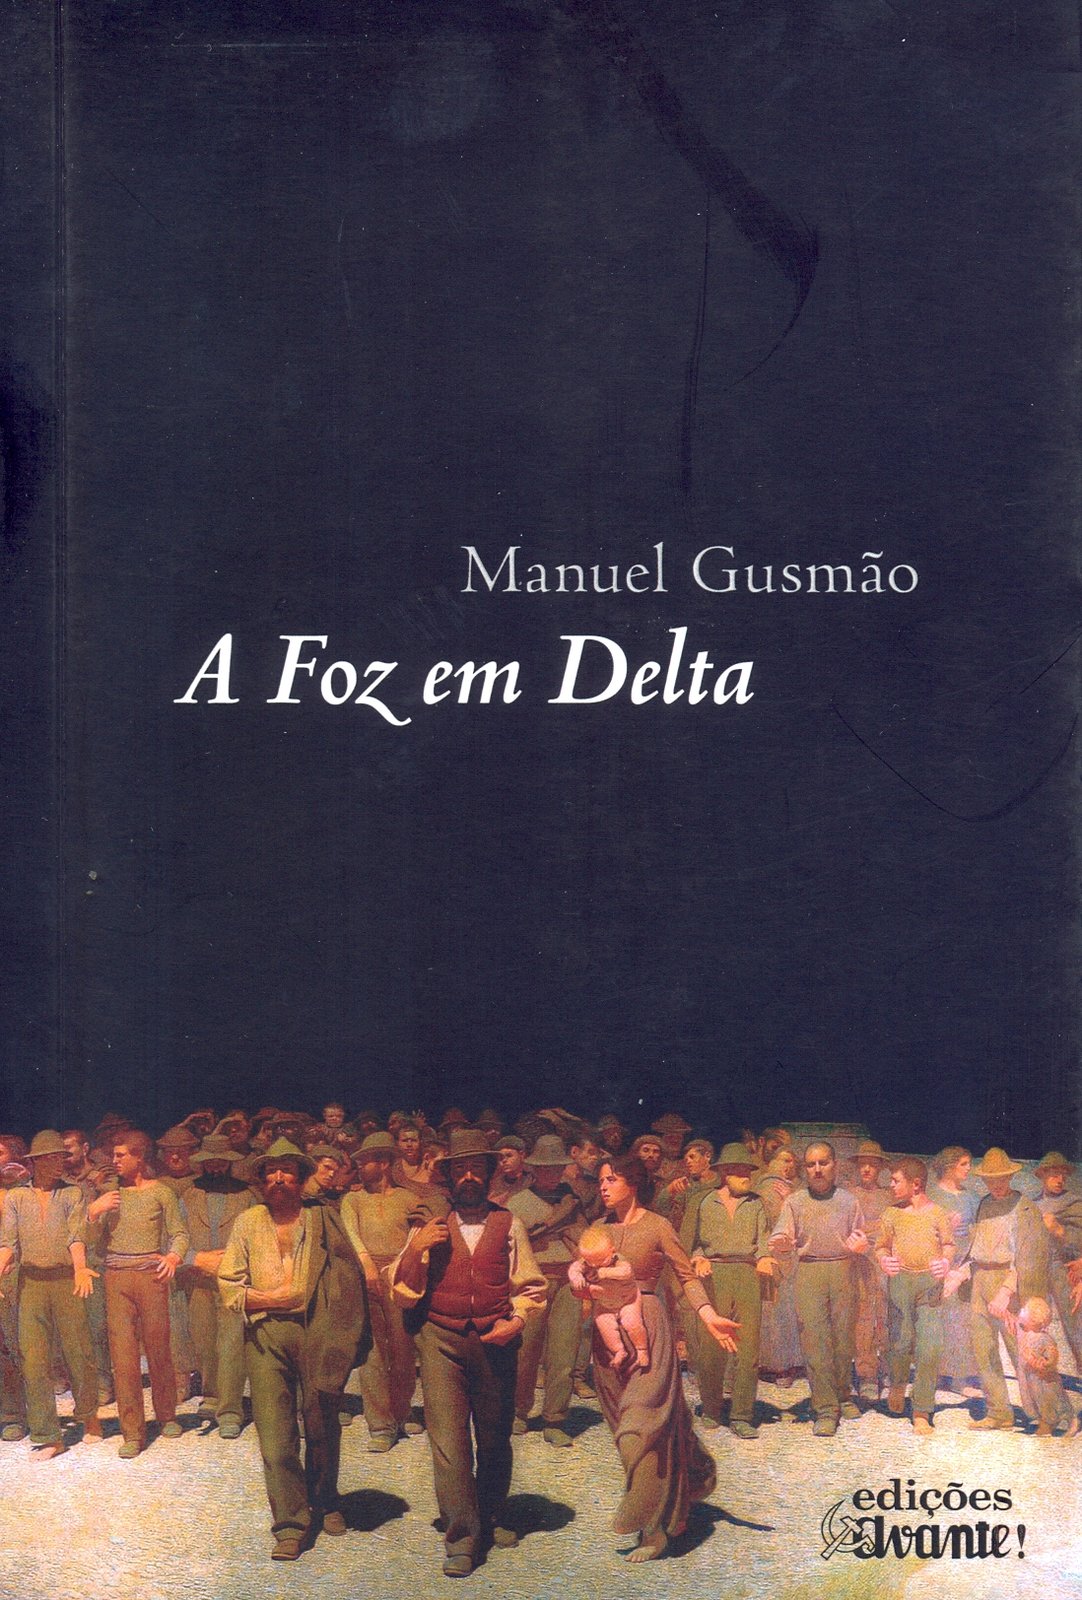 Manuel Gusmão - A Foz em Delta